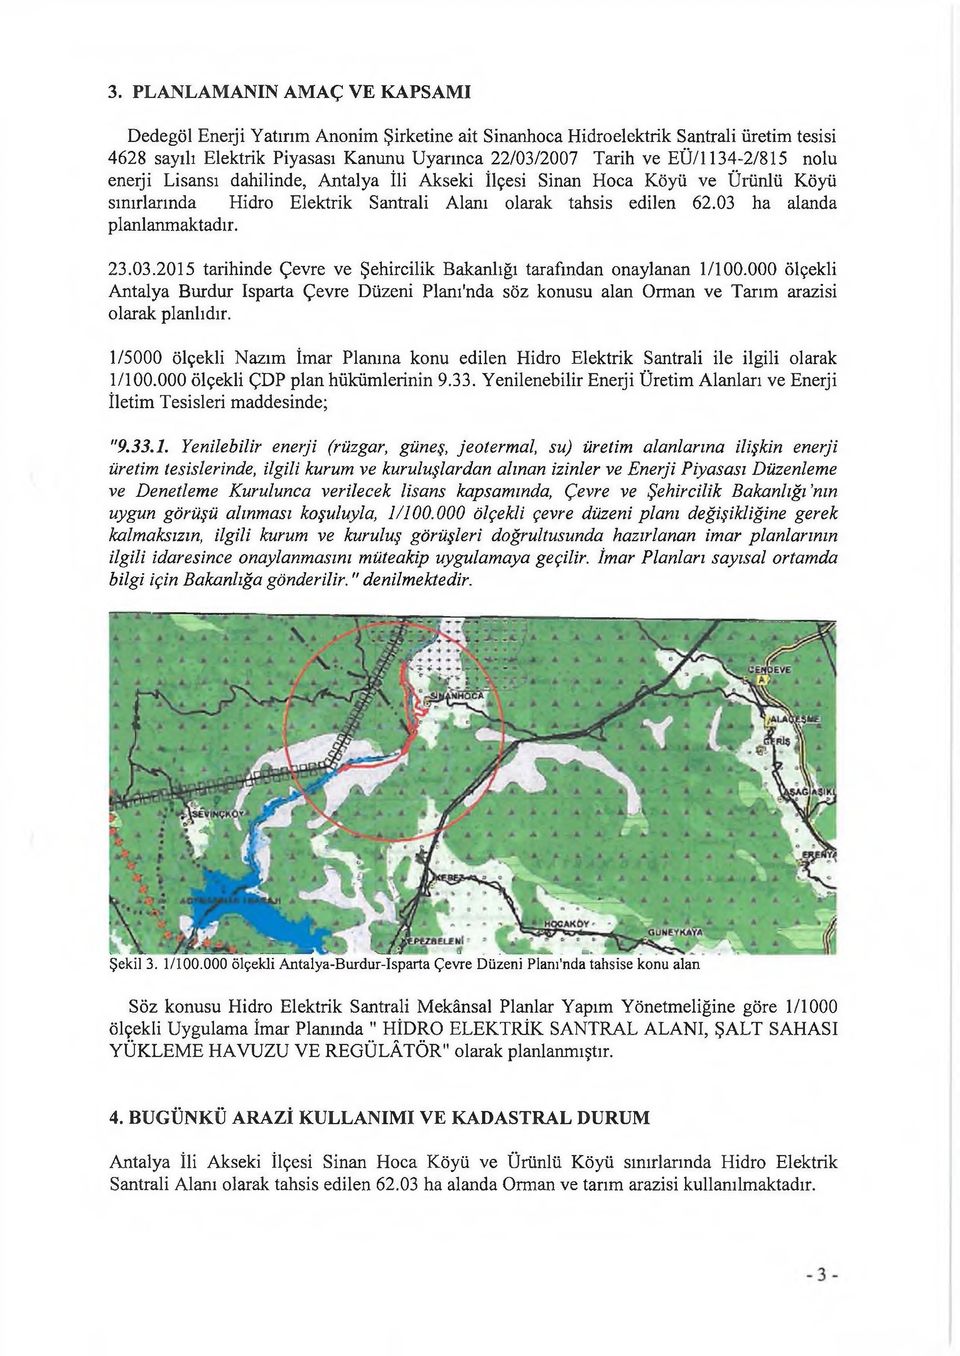 23.03.2015 tarihinde Çevre ve Şehircilik Bakanlığı tarafından onaylanan 1/100.000 ölçekli Antalya Burdur İsparta Çevre Düzeni Planırnda söz konusu alan Orman ve Tarım arazisi olarak planlıdır.